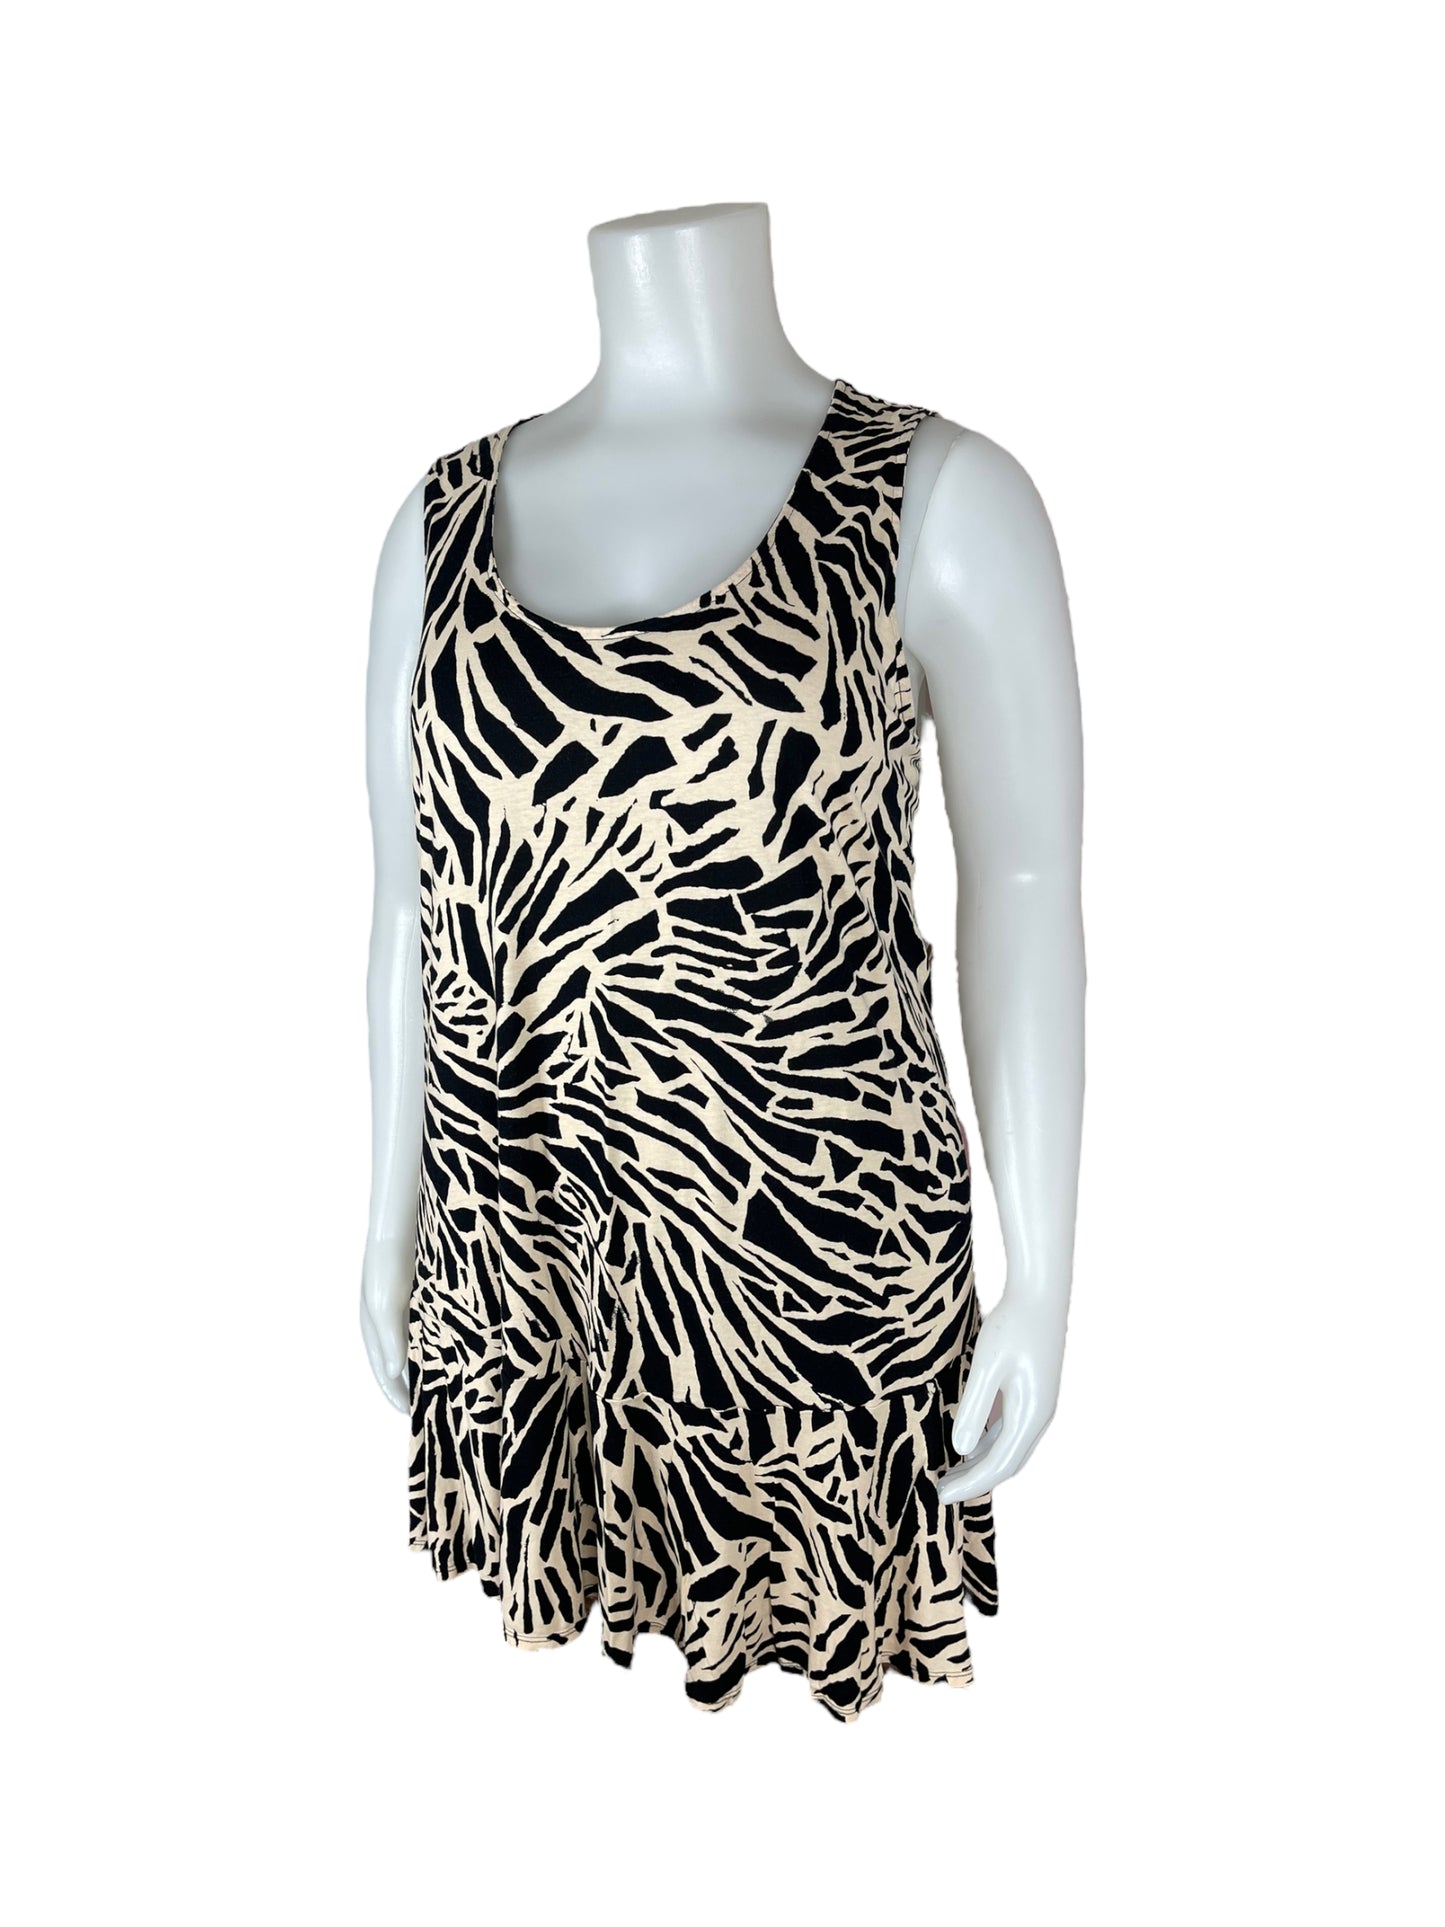 "H&M" Black and Tan Pattern Dress (XXL)